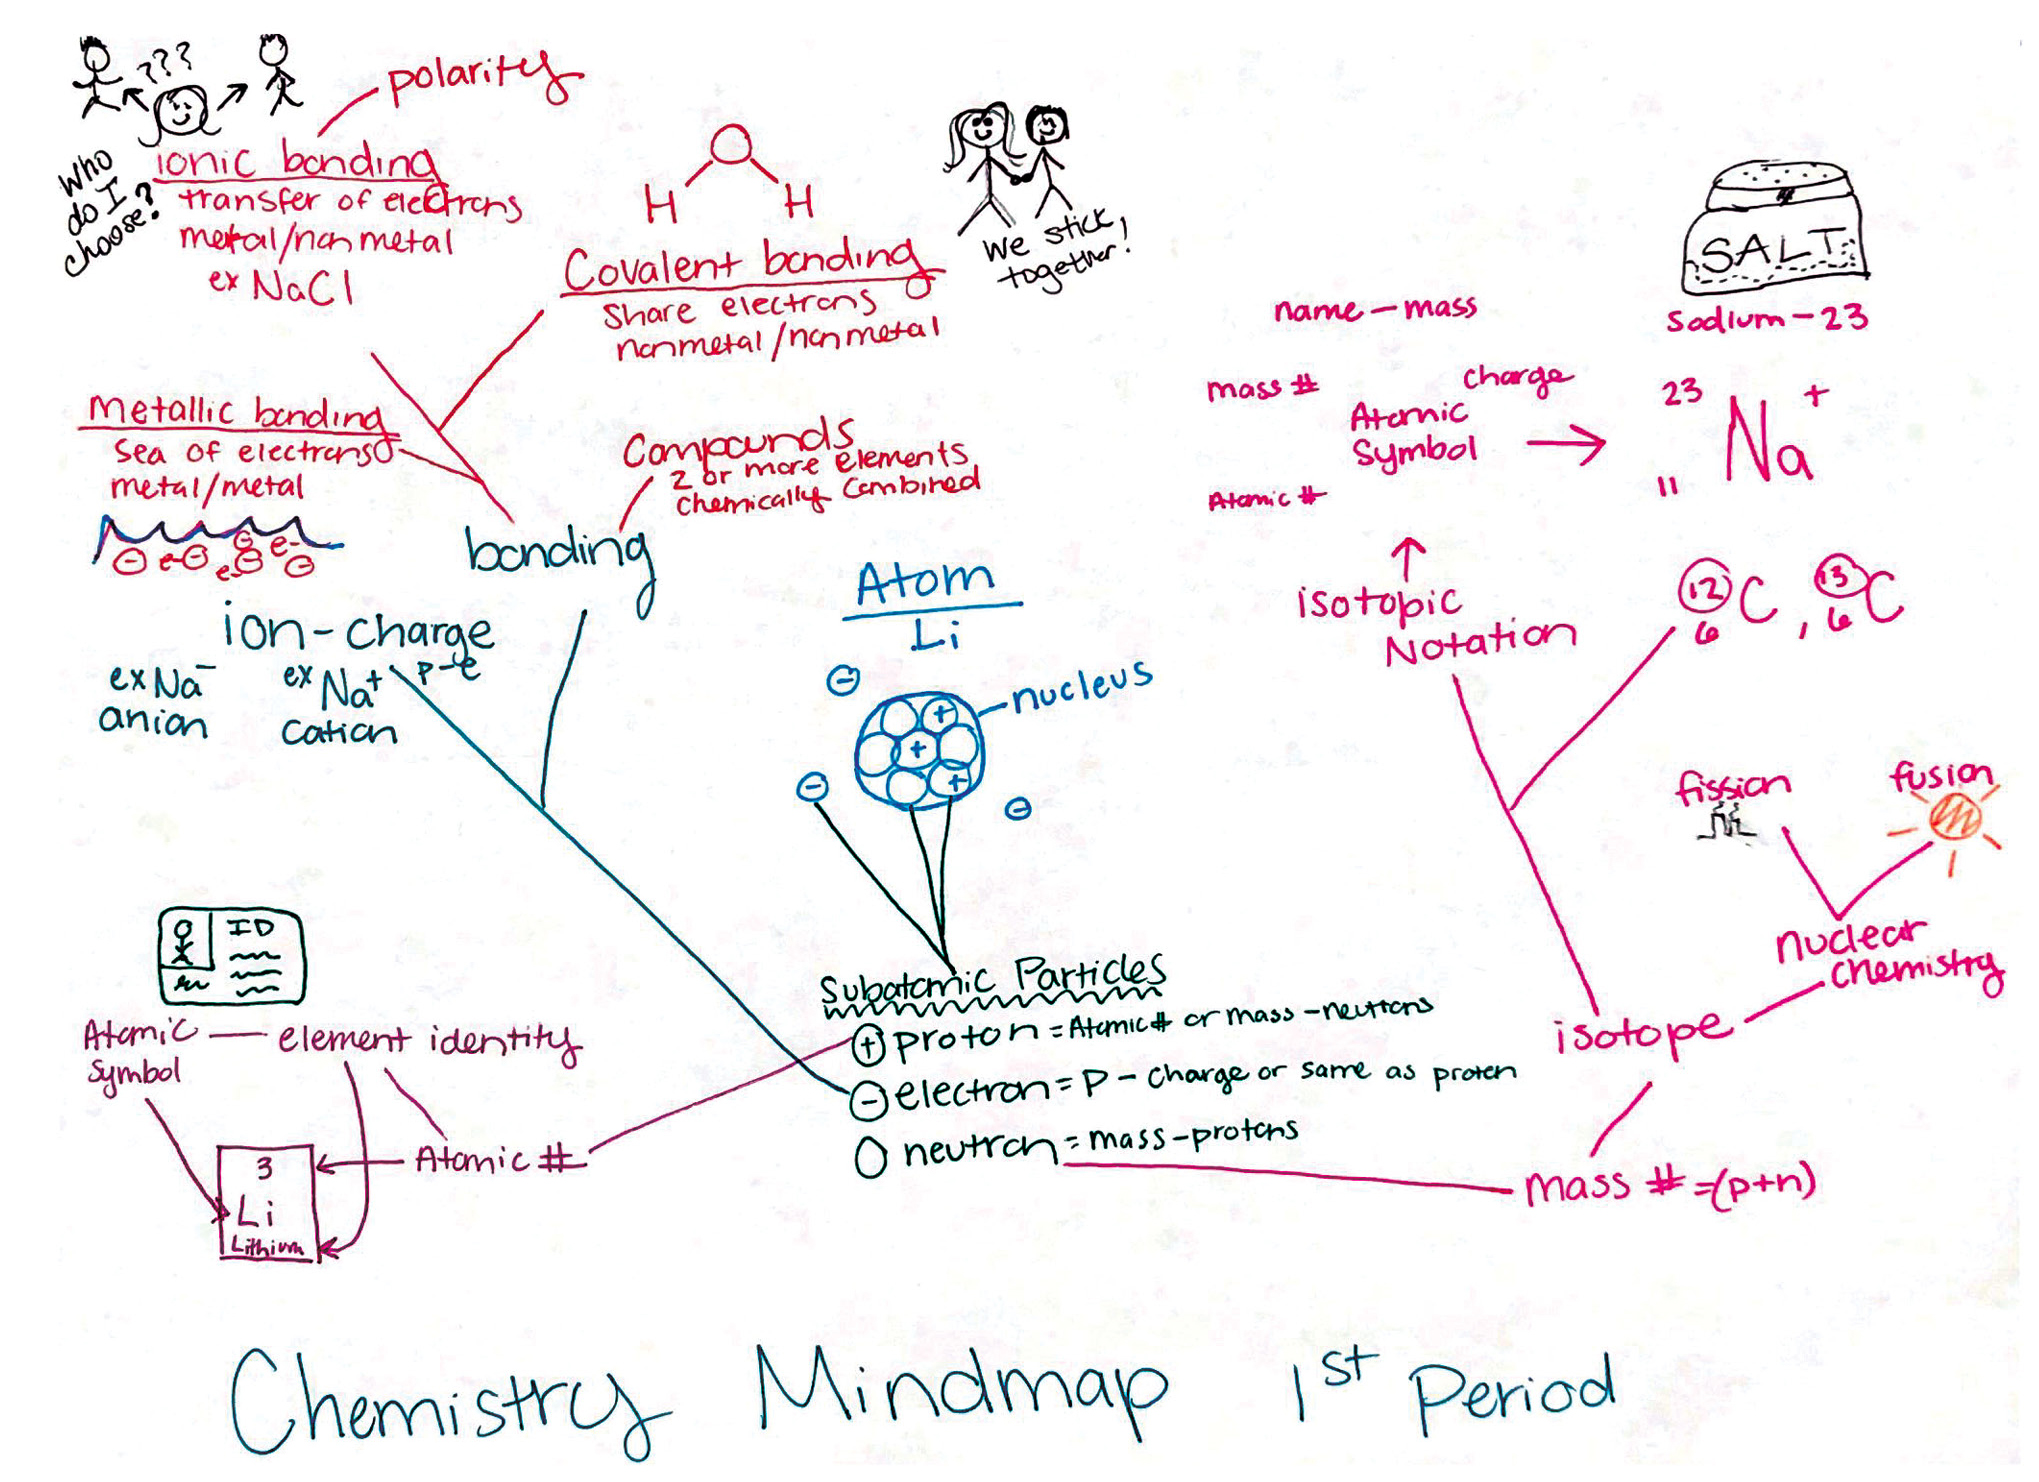 Figure 2 Chemistry mindmap.